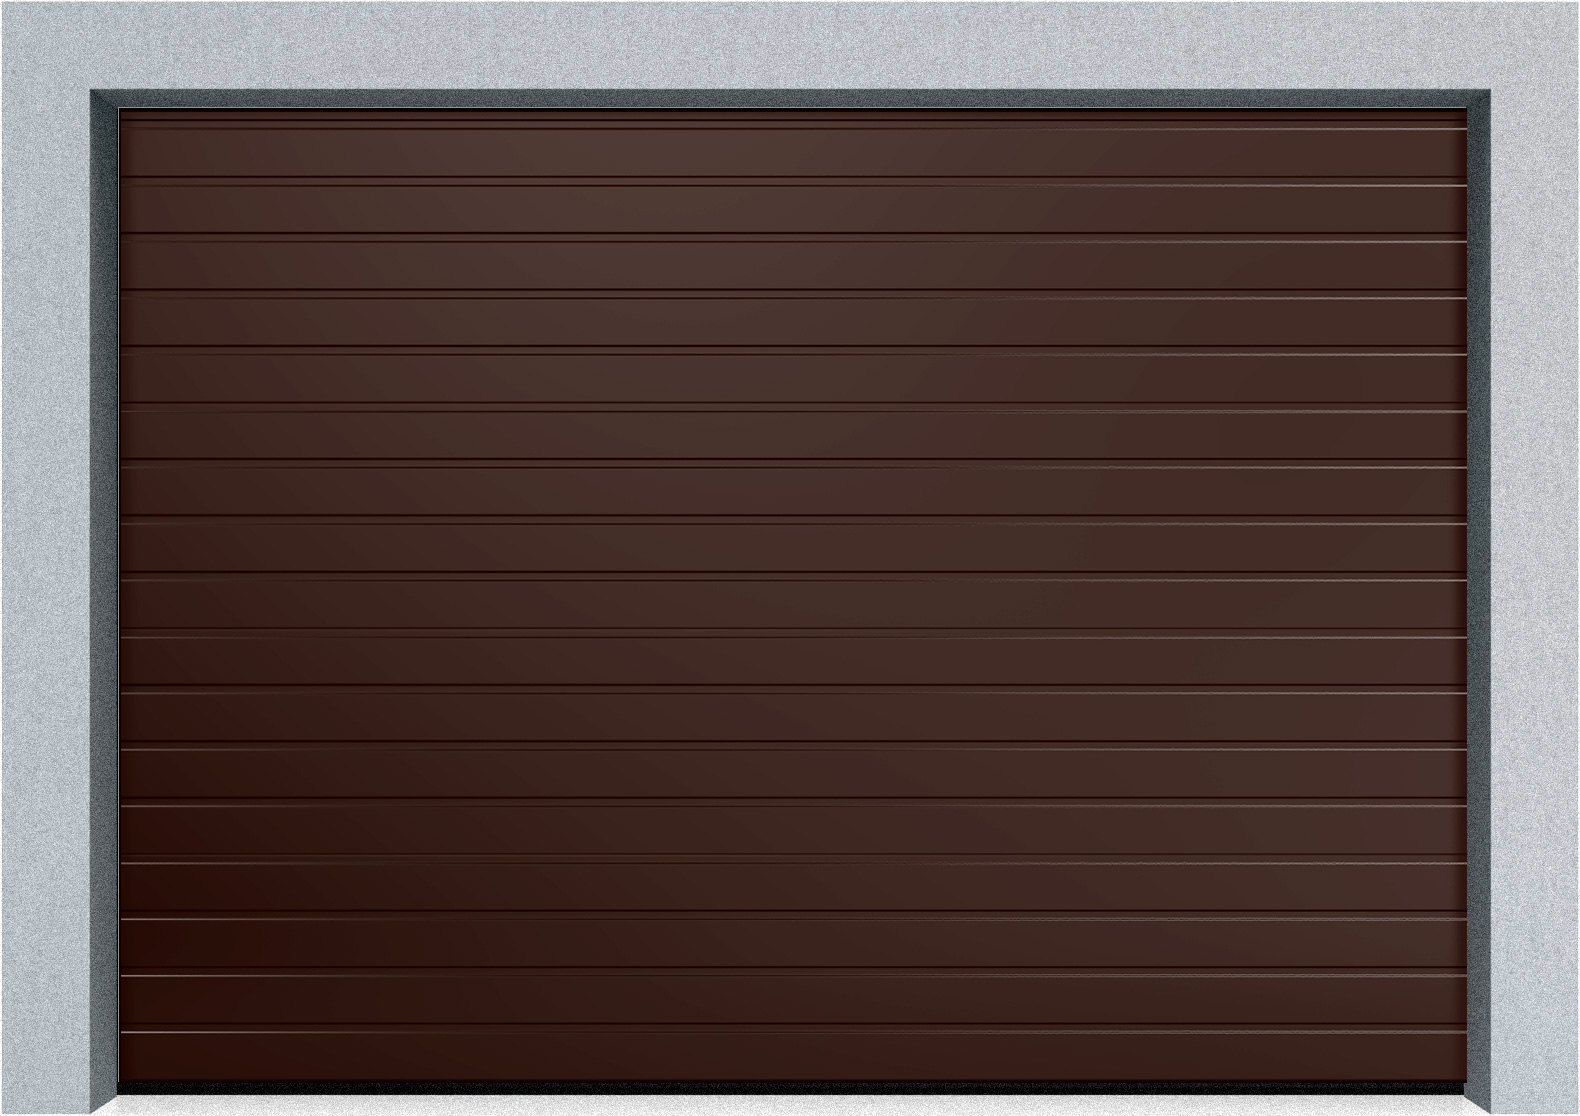  Автоматические секционные промышленные ворота DoorHan ISD ThermalPro 3600x2300 S-гофр, M-гофр, Микроволна стандартные цвета, фото 3 